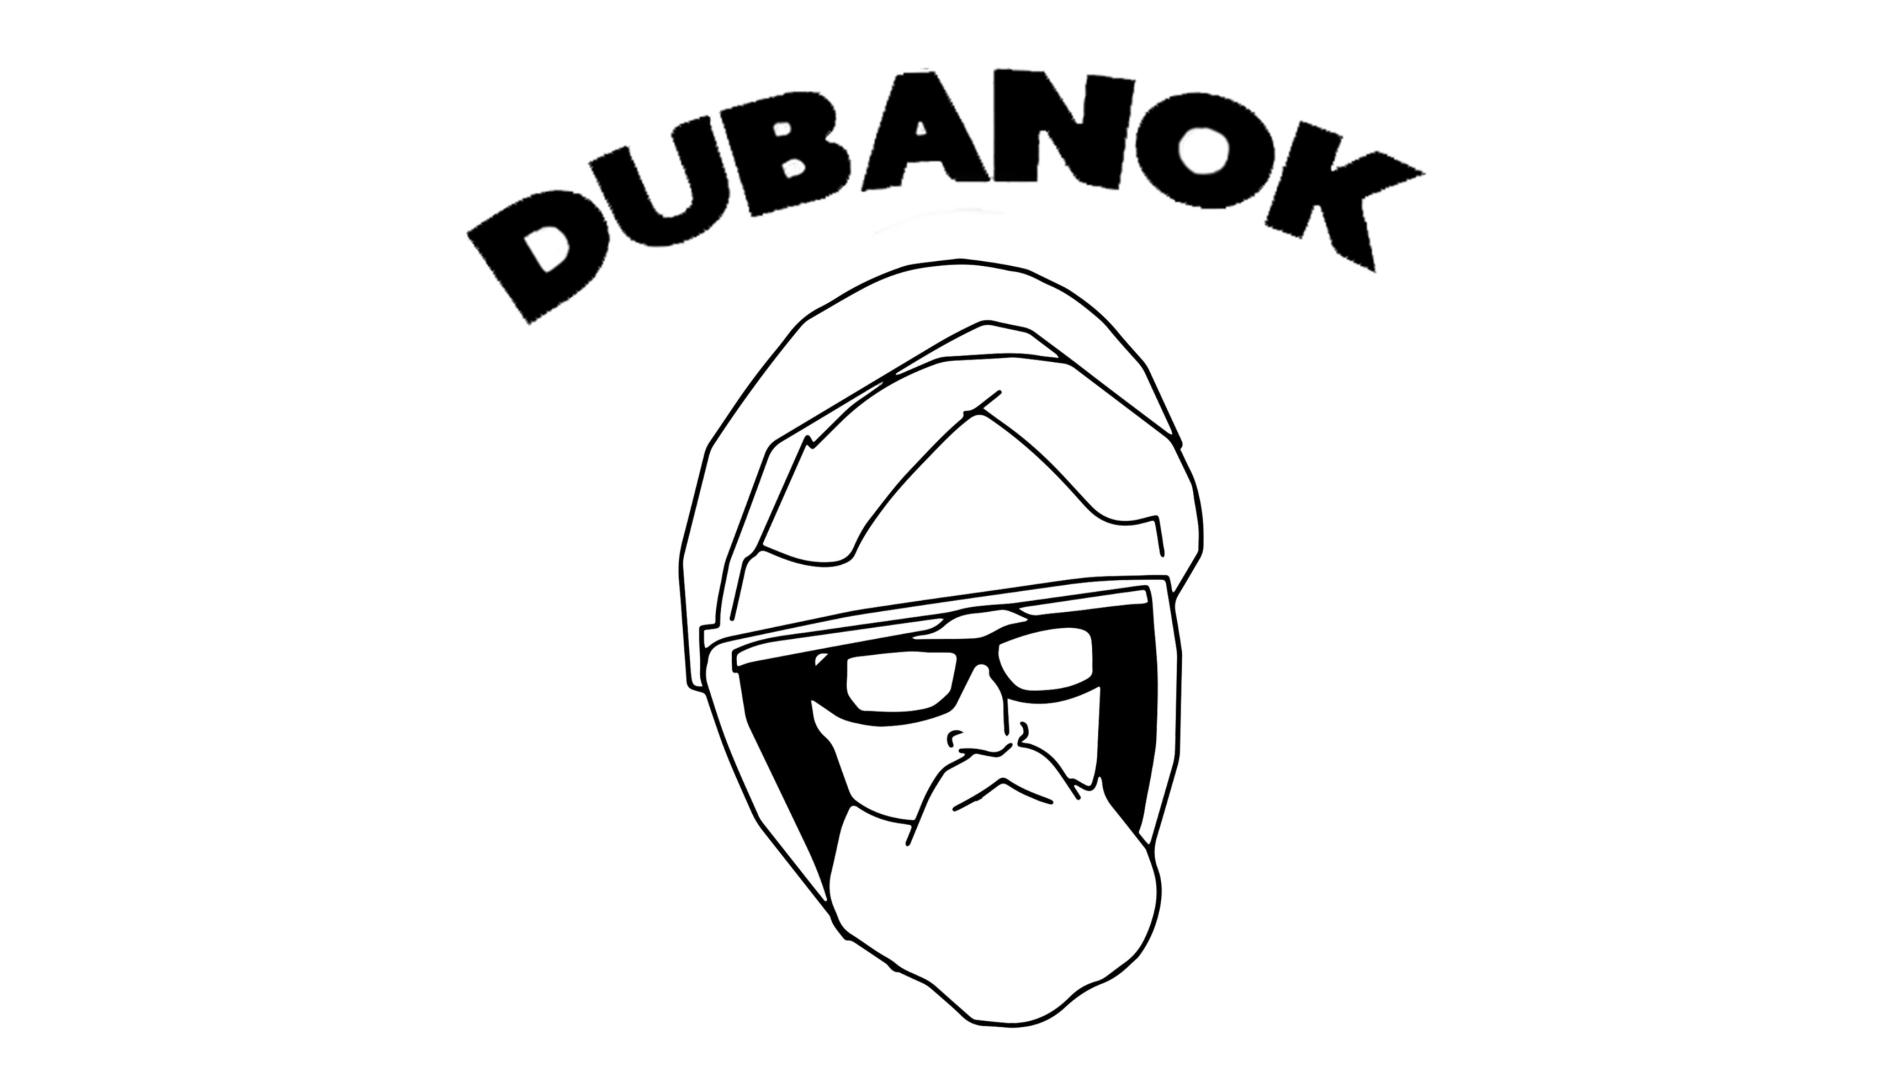 dubanok-DUBANOK.jpg